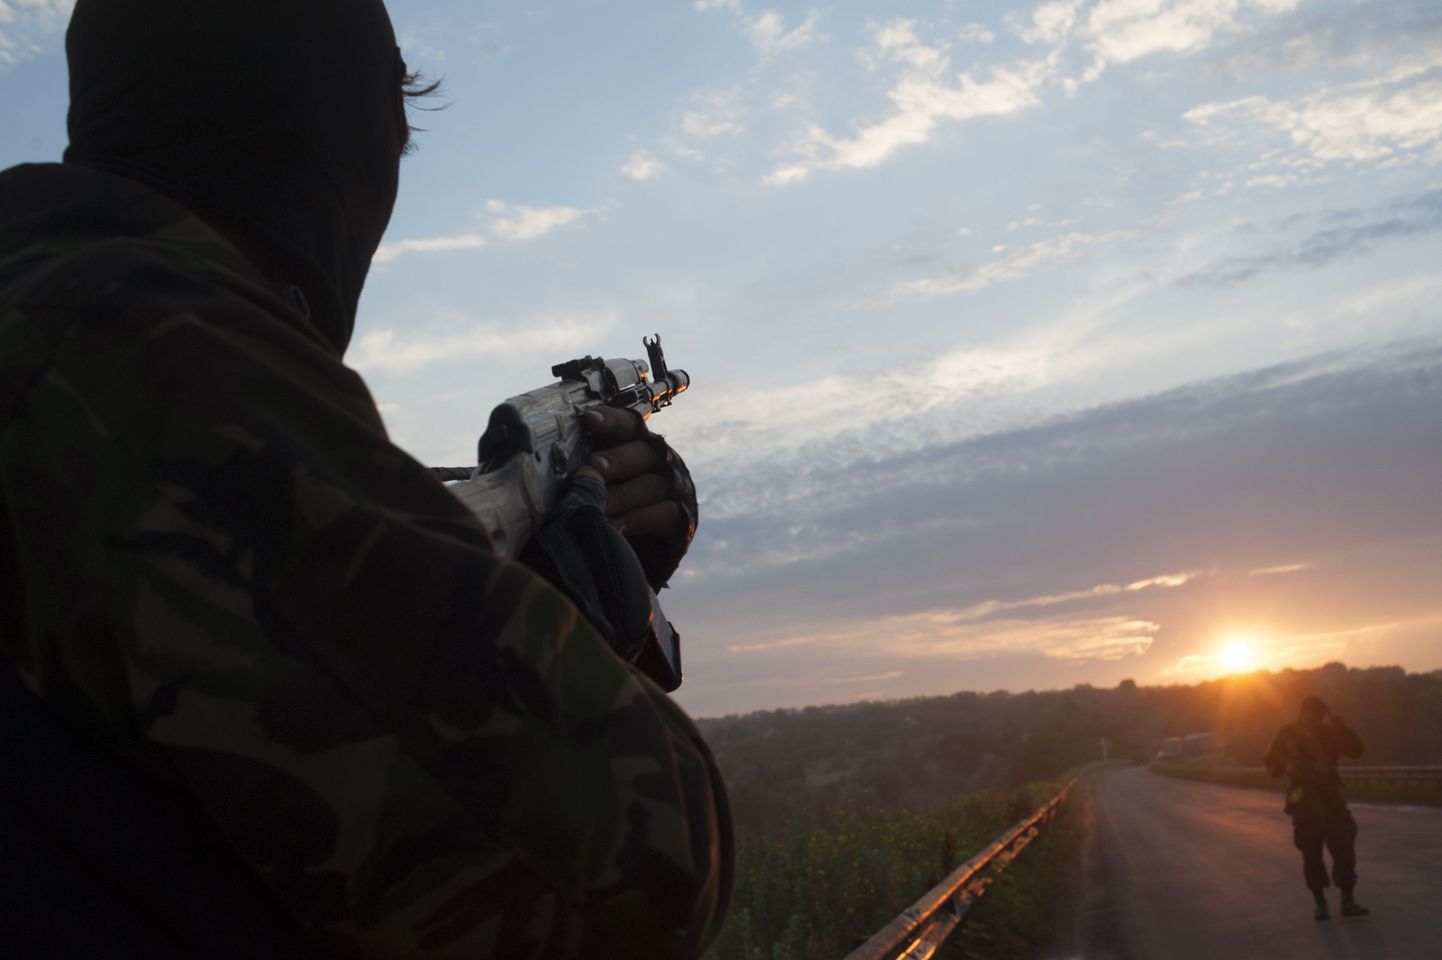 В теле одного из убитых под Луганском во время минометного обстрела журналистов «Вестей» обнаружили пулю, предположительно, выпущенную снайпером, заявил глава самопровозглашенной Луганской народной республики Валерий Болотов.